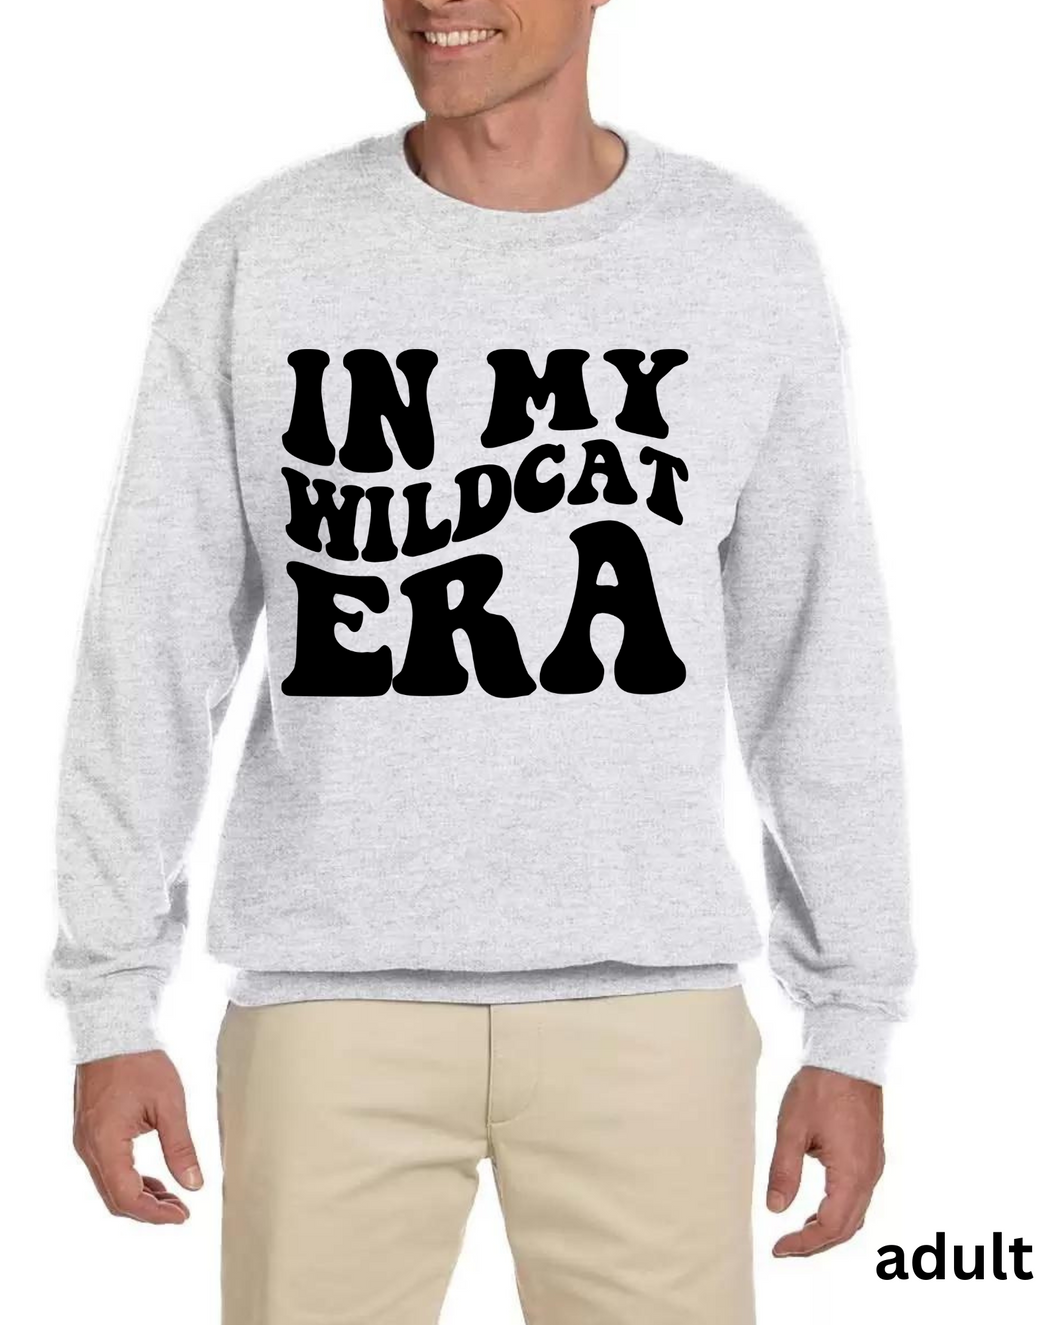 wildcat era sweatshirt